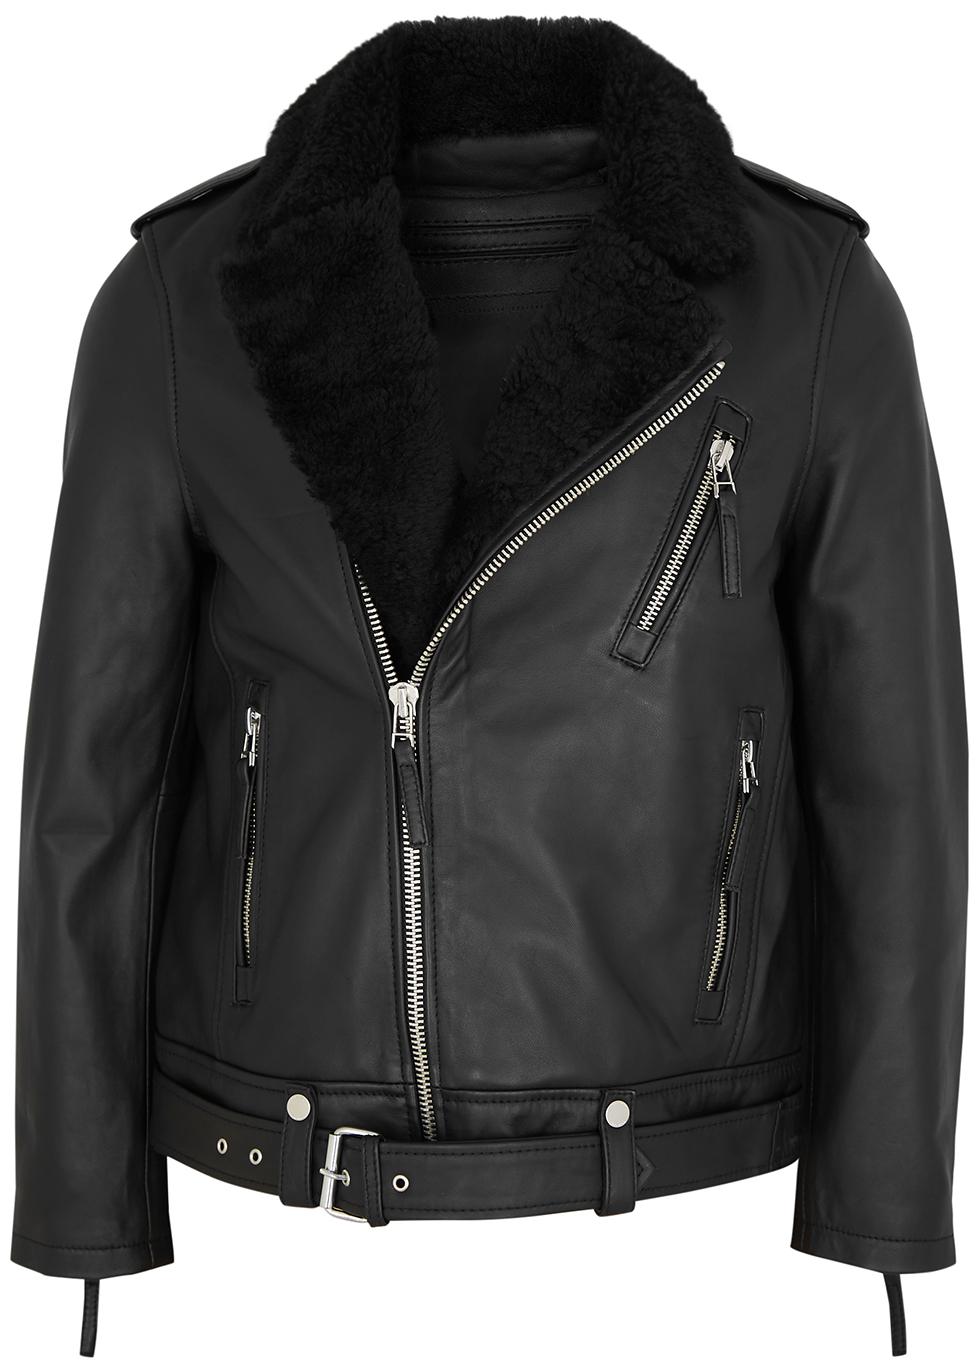 Voyager shearling-trimmed leather biker jacket by BODA SKINS